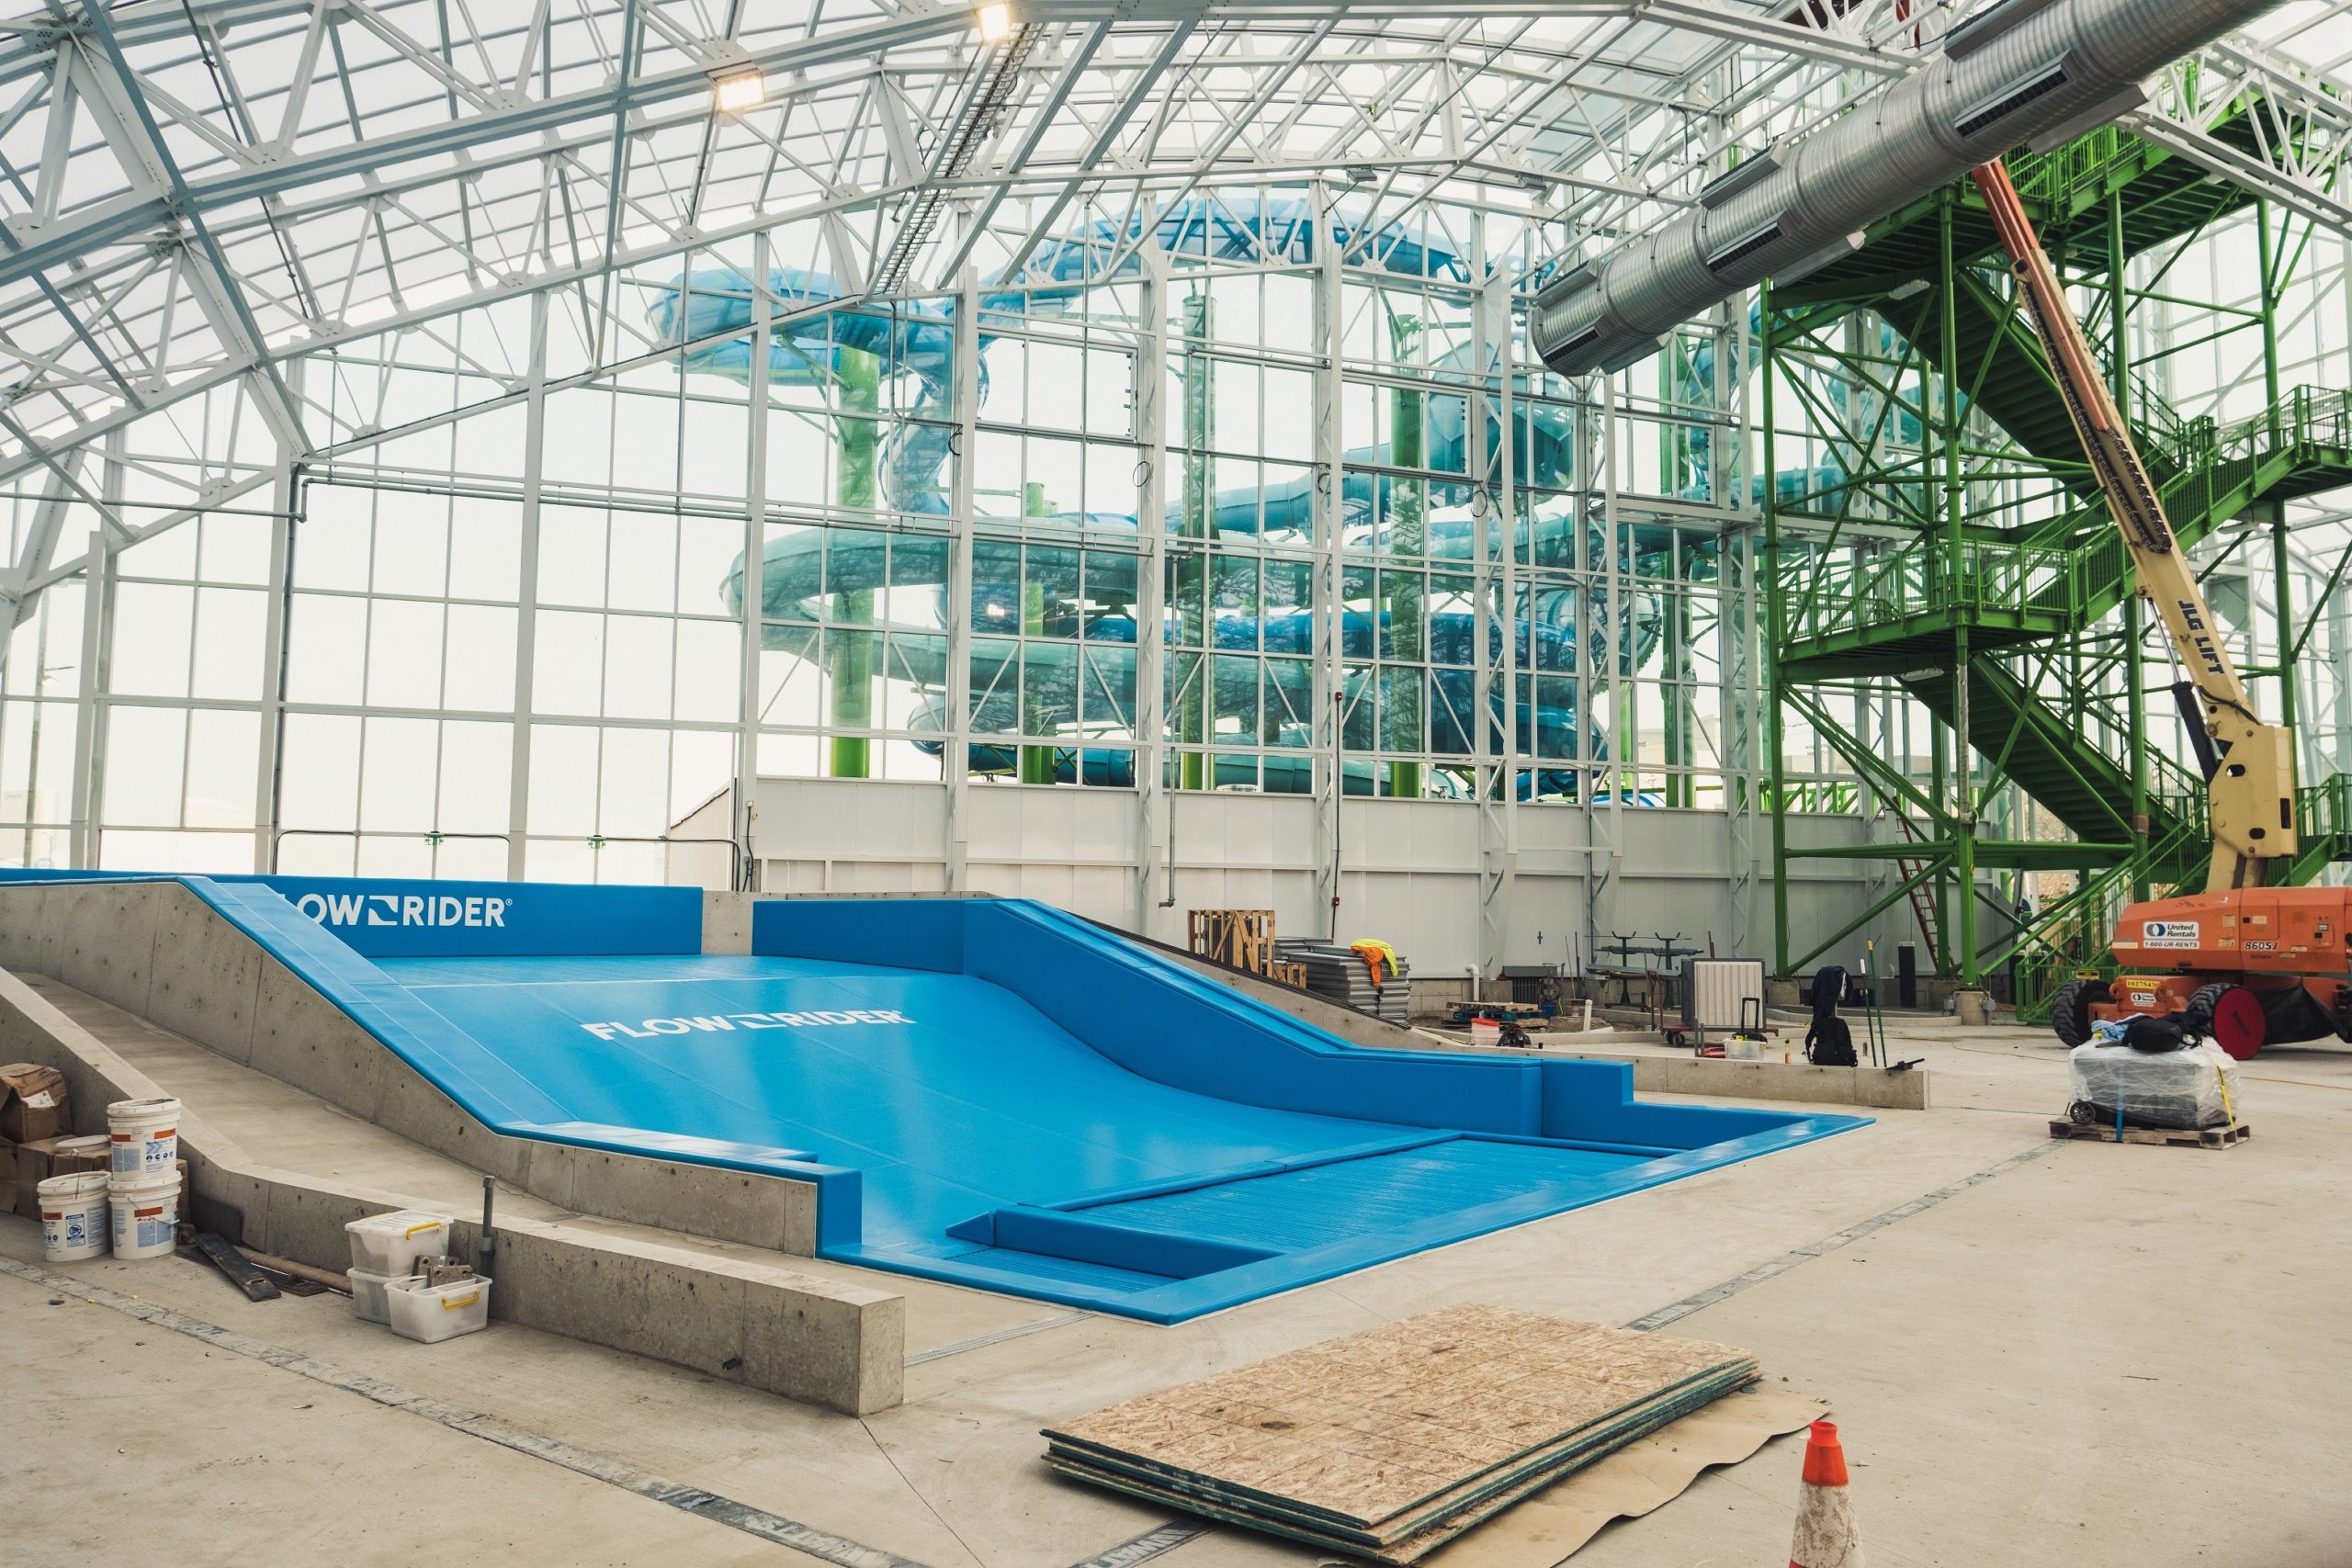 FlowRider surf machine at indoor water park construction site